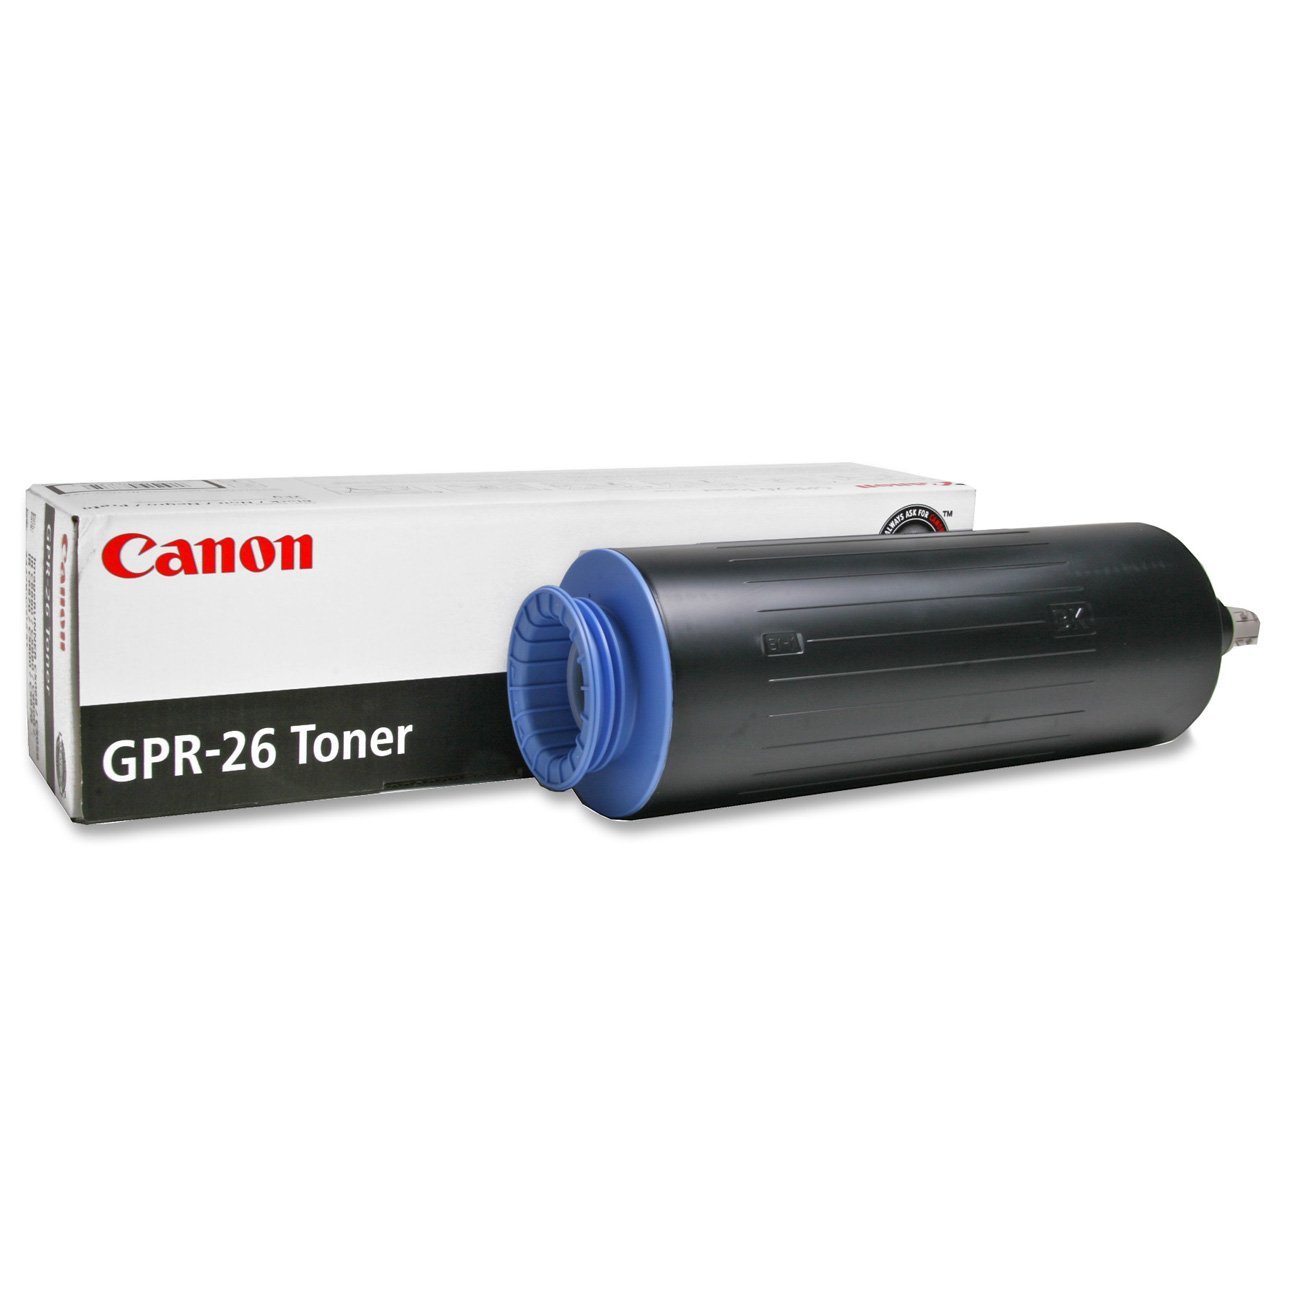 Absolute Toner Canon GPR-26 Original Genuine OEM Black Toner Cartridge | 2447B003AA Original Canon Cartridges